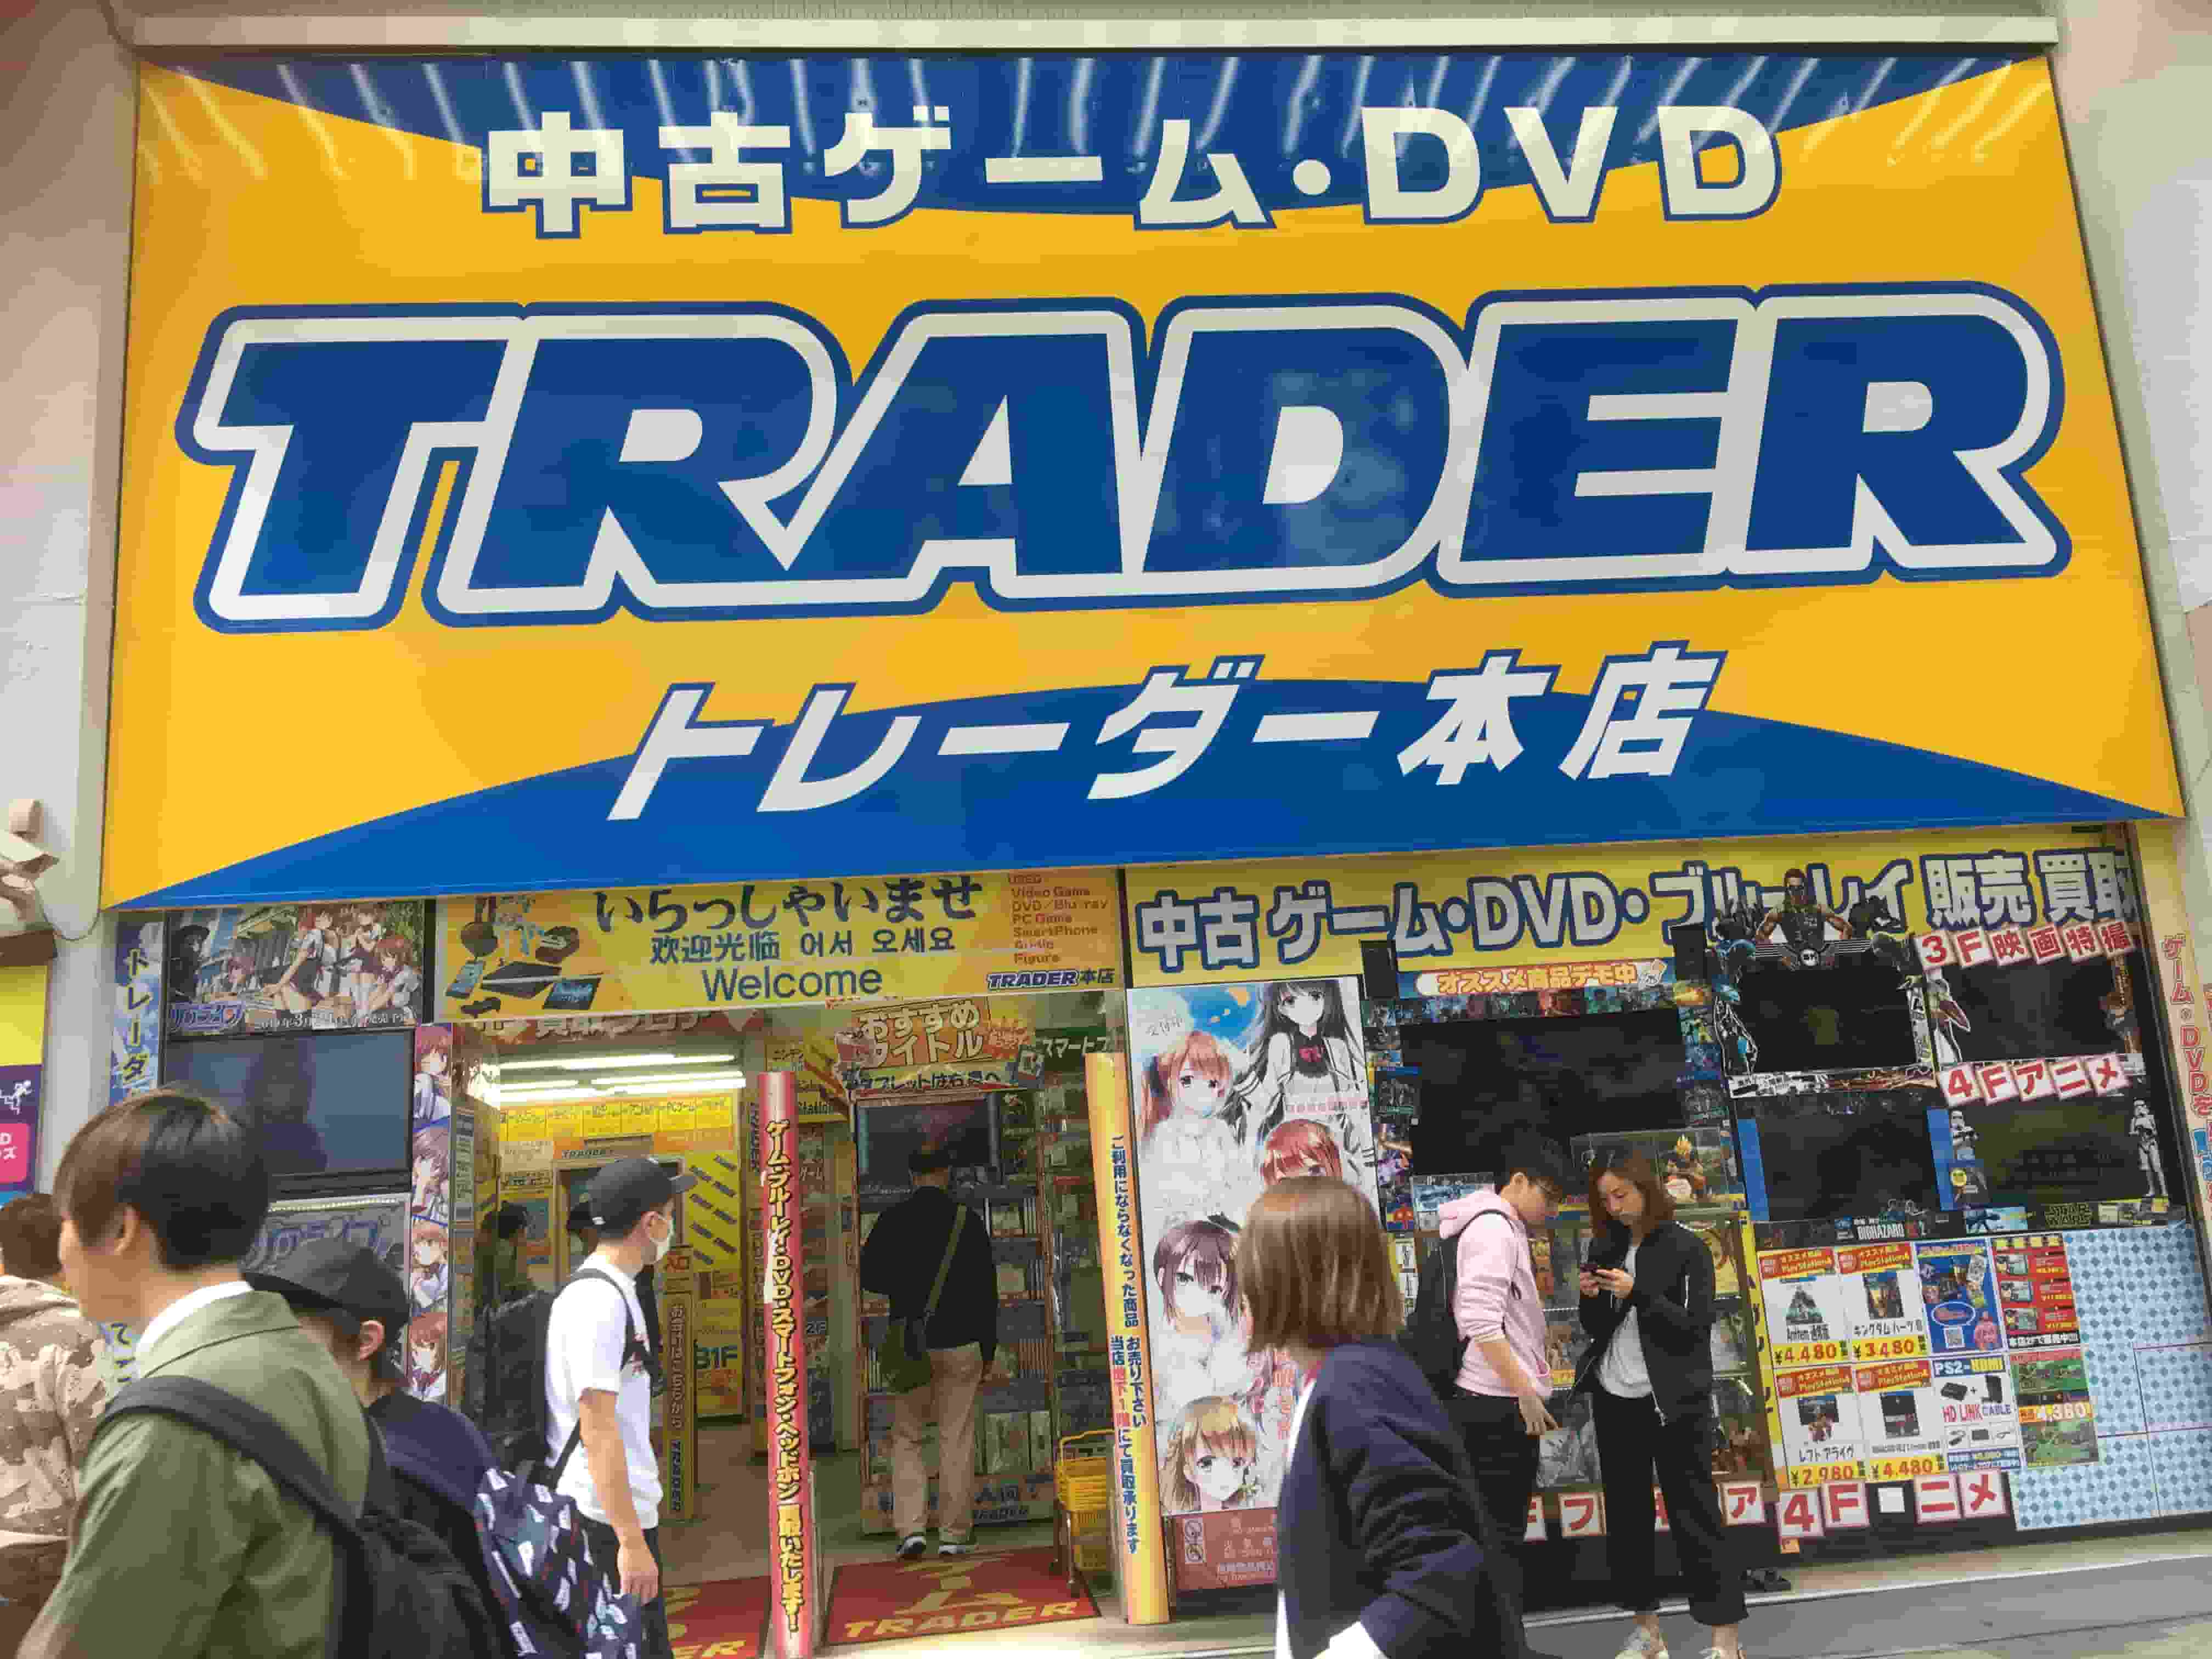 Image result for Tokyo  Akihabara  ADULT DVD Shops